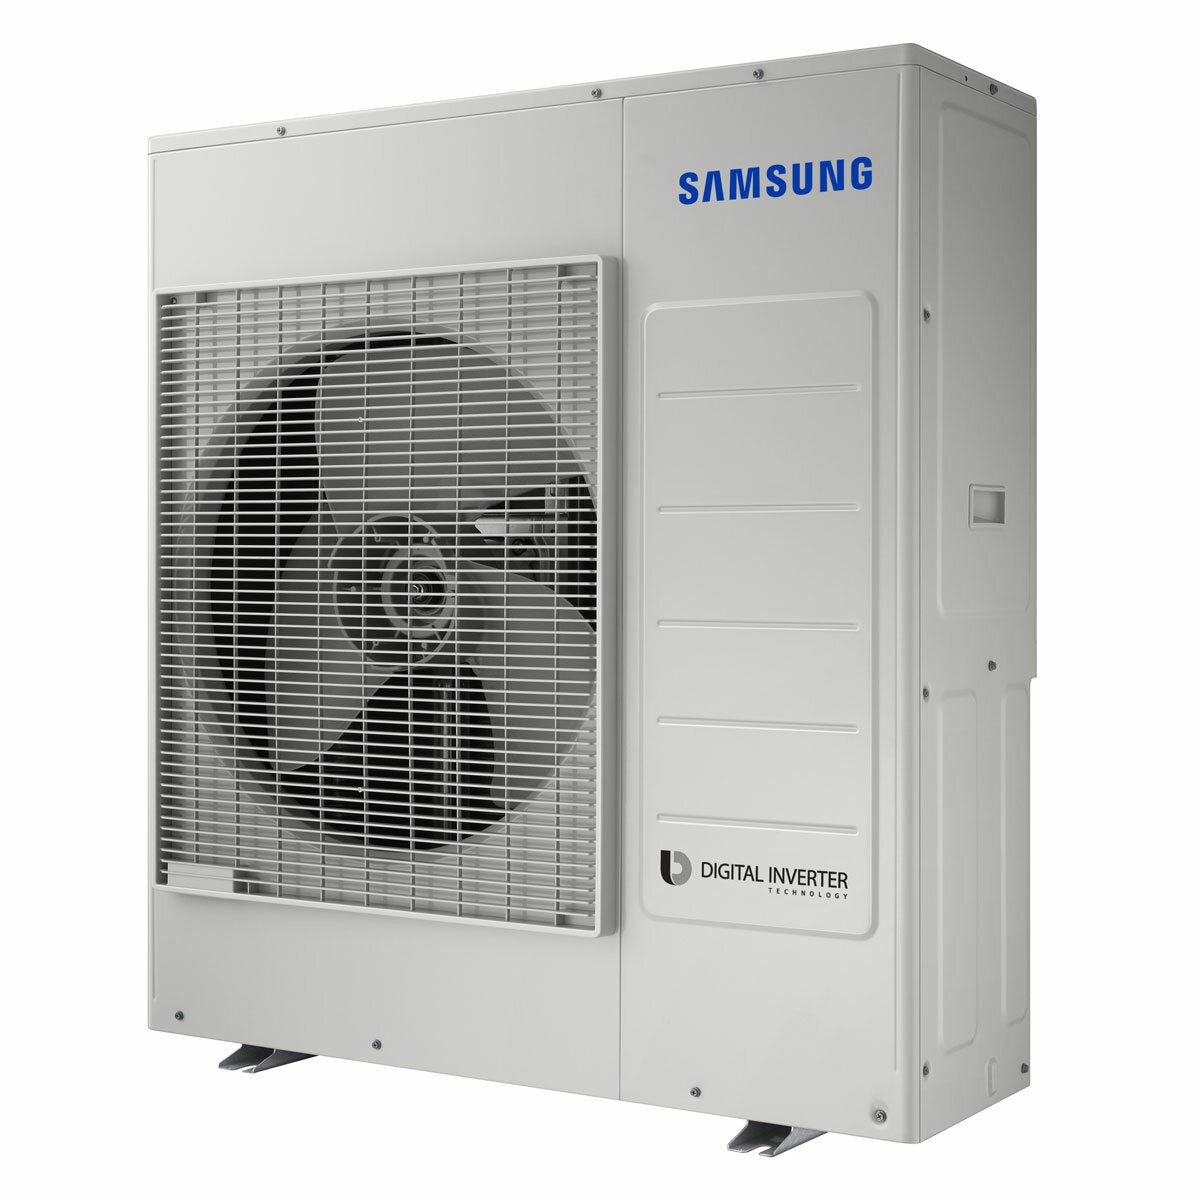 Samsung Air conditioner Windfree 4-way penta split 9000 + 9000 + 9000 + 9000 + 12000 BTU inverter A ++ outdoor unit 10.0 kW